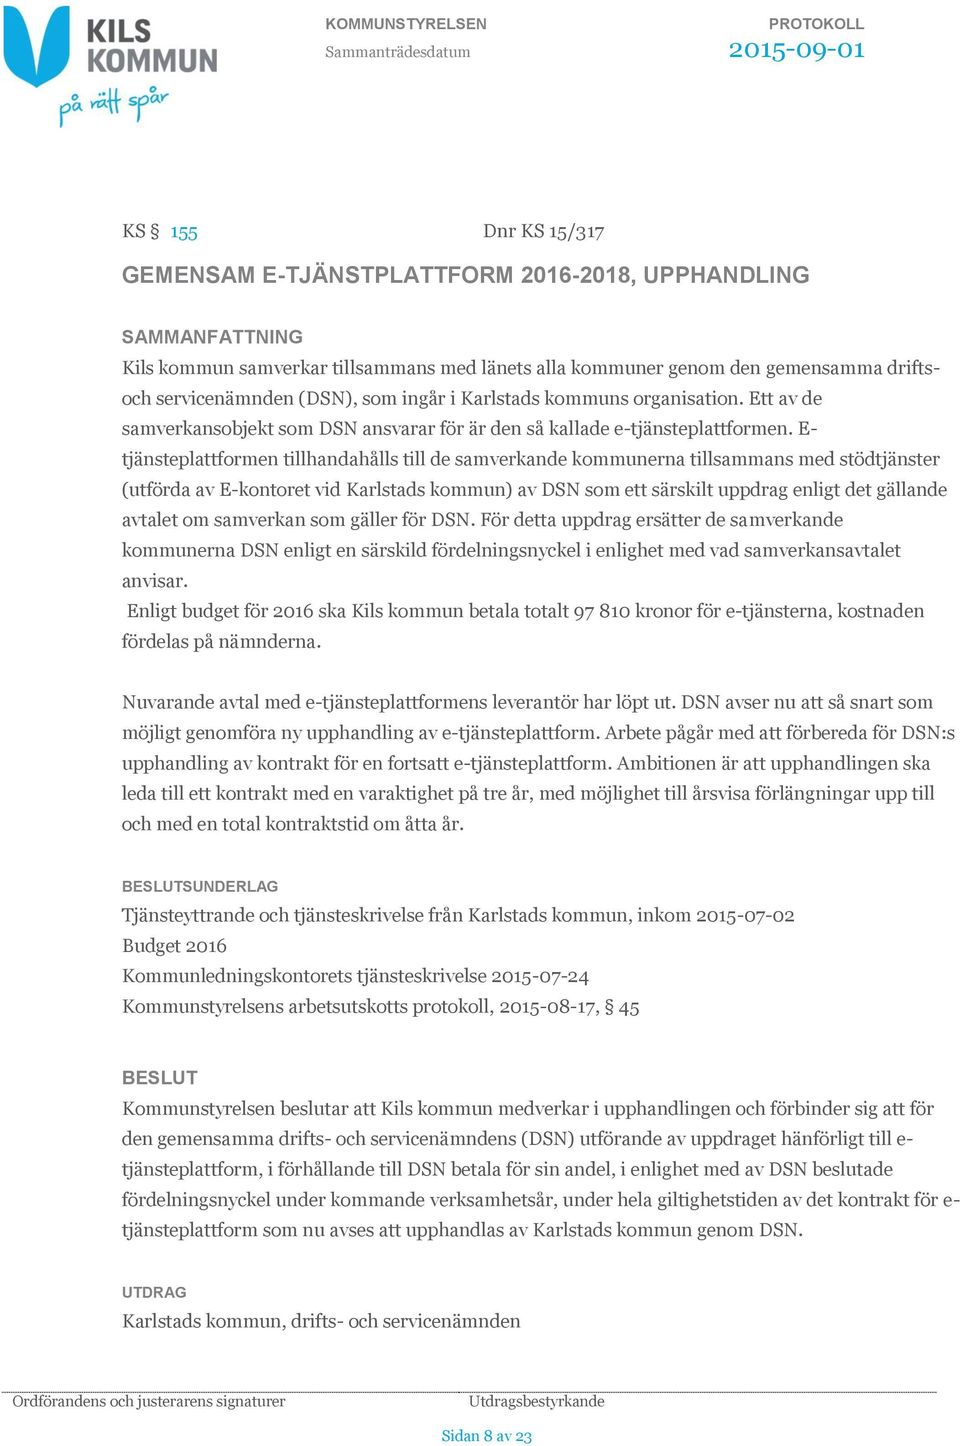 E- tjänsteplattformen tillhandahålls till de samverkande kommunerna tillsammans med stödtjänster (utförda av E-kontoret vid Karlstads kommun) av DSN som ett särskilt uppdrag enligt det gällande